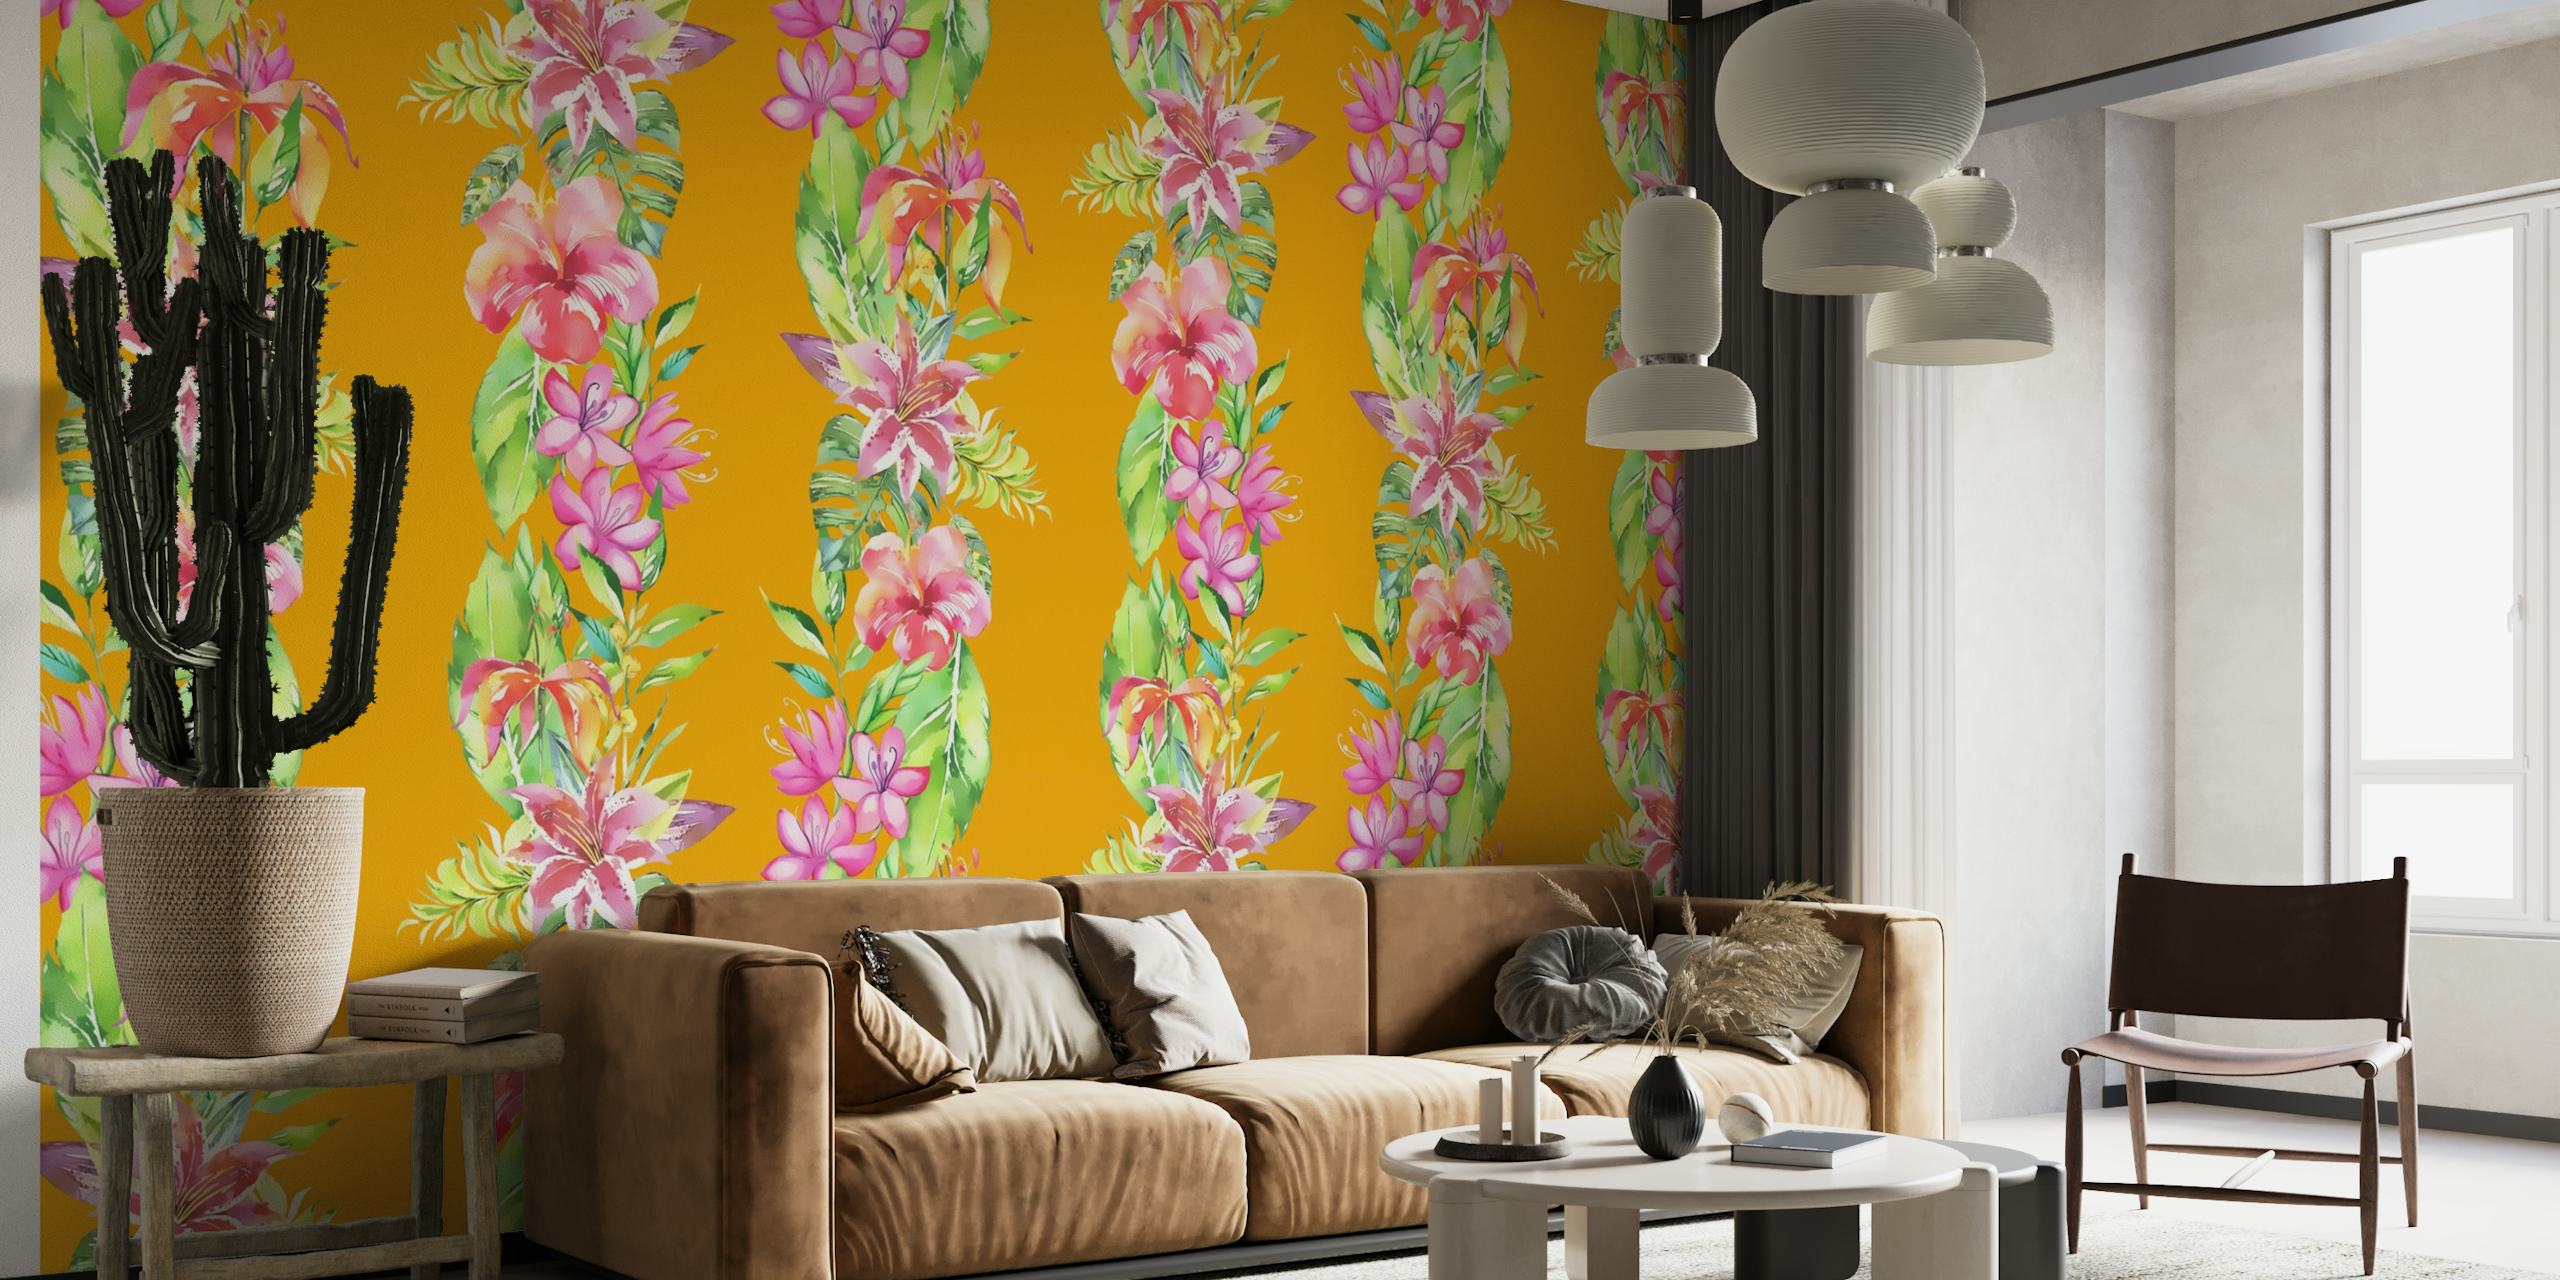 Padrões florais tropicais coloridos em fotomural vinílico de parede com fundo listrado amarelo